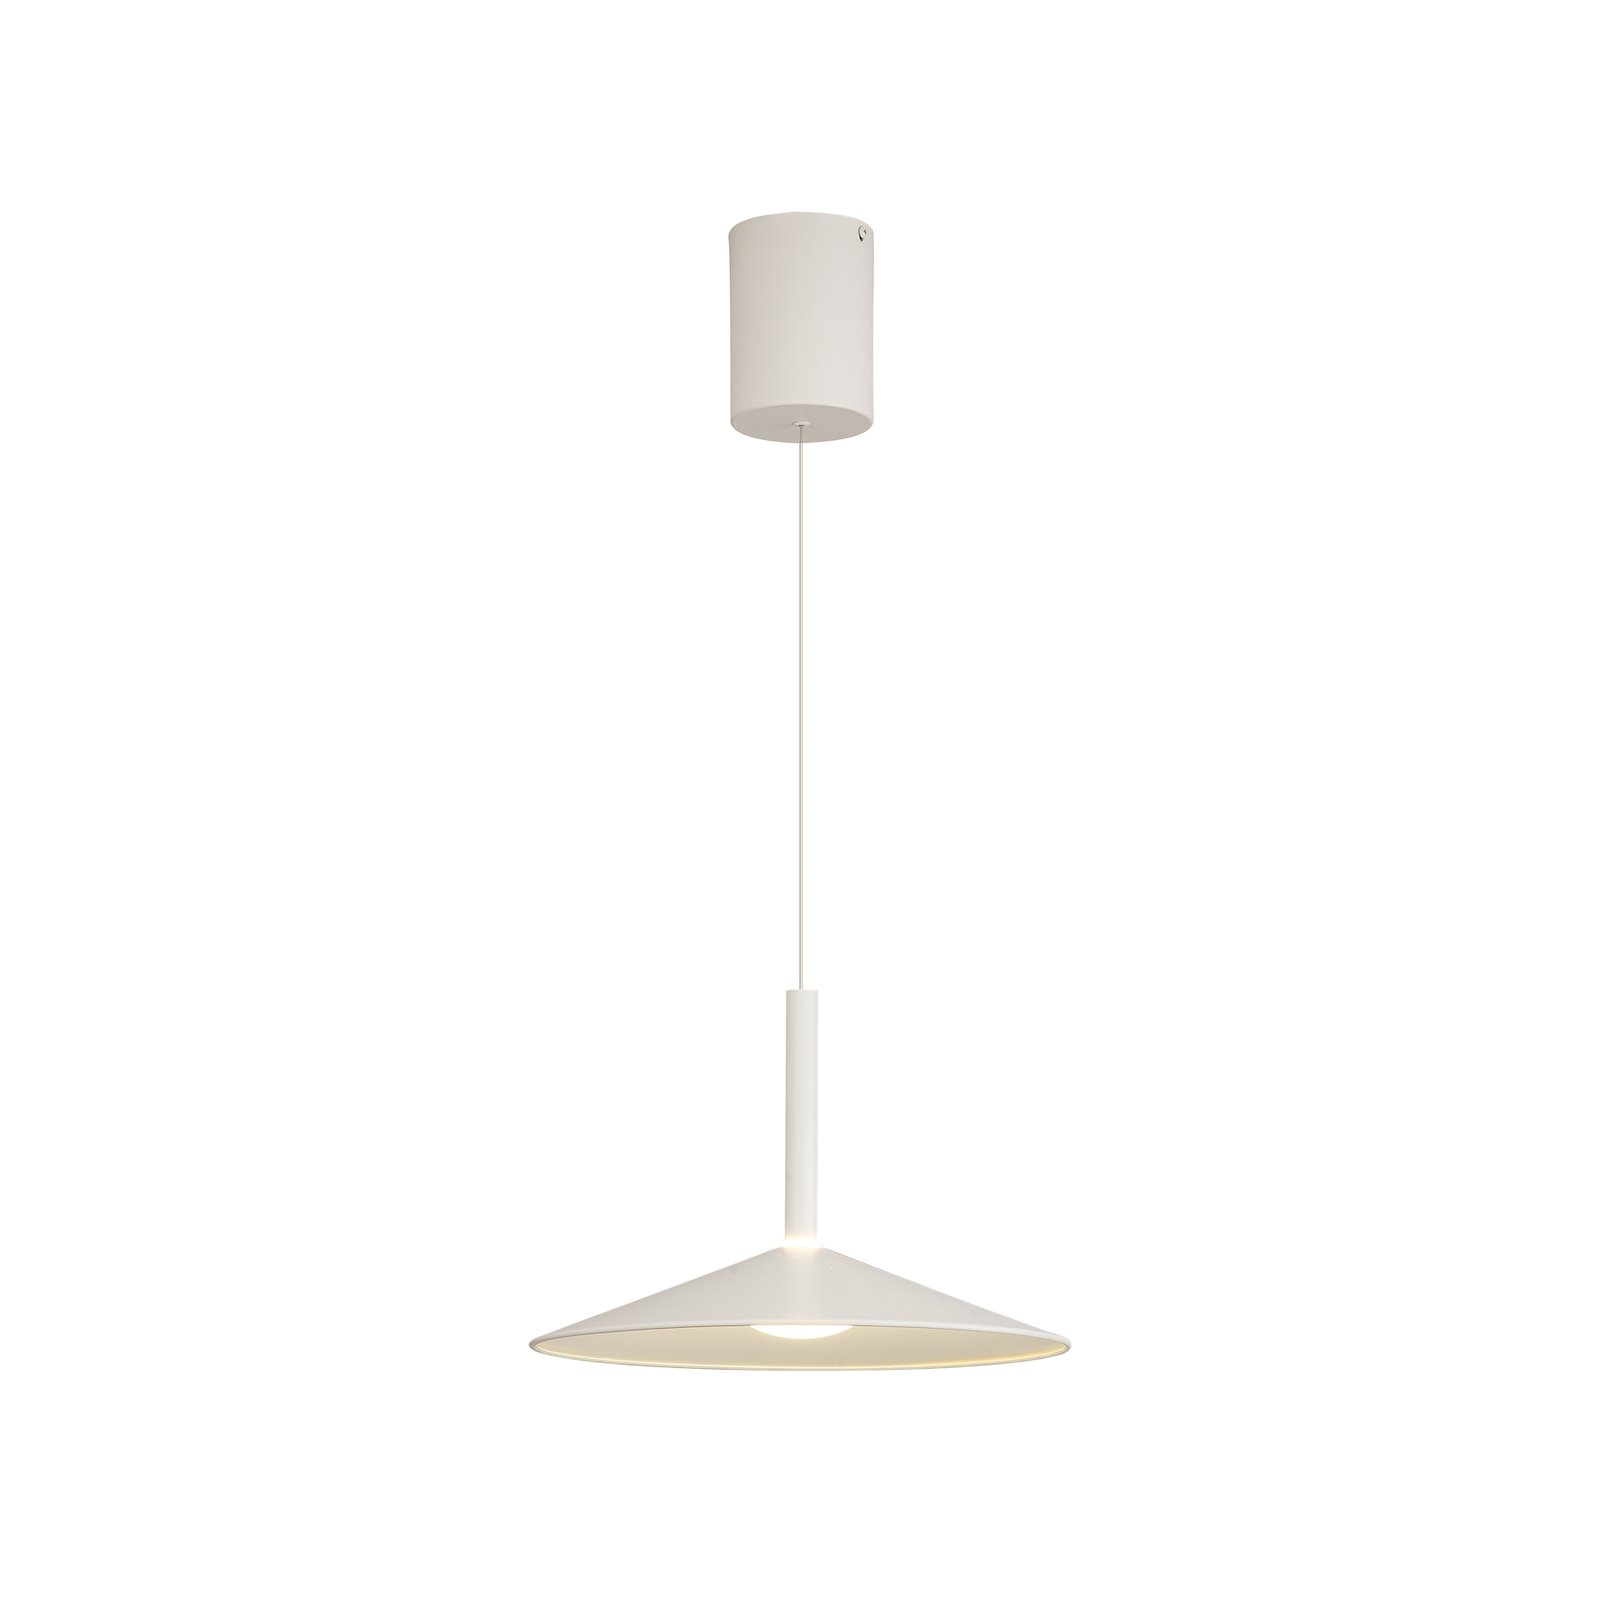 Lampa wisząca LED Calice, biała, Ø 32 cm, regulowana wysokość